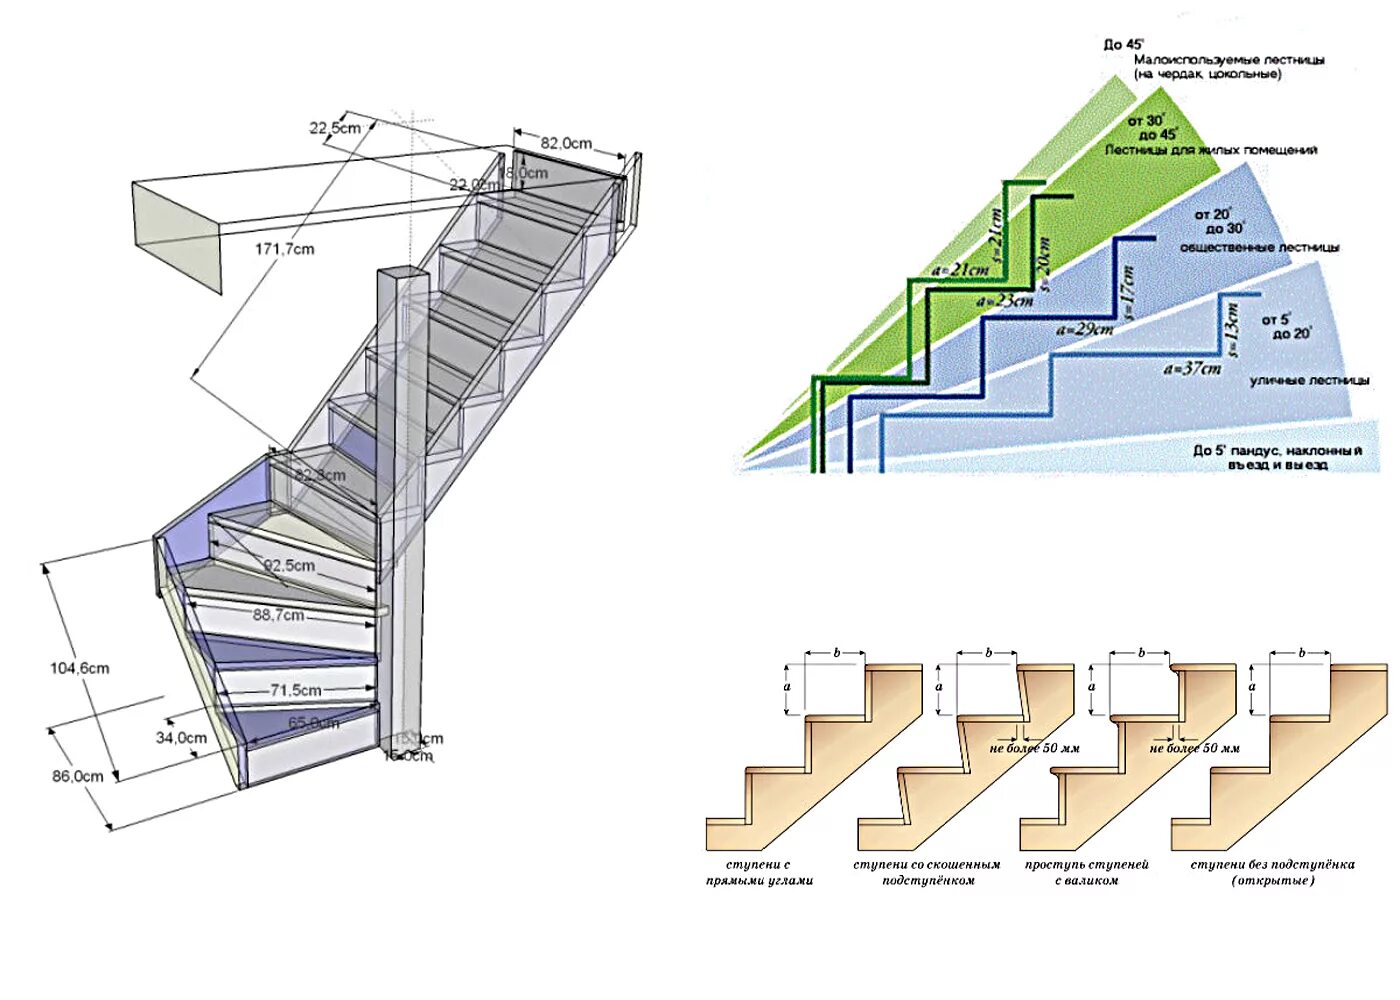 Правильная лестница на второй. Как правильно рассчитать лестницу на 2 этаж. Ступени в лестницы 200 мм ширина. Маршевая лестница 60 гр шаг ступеней. Как рассчитать Размеры лестницы на 2 этаж.